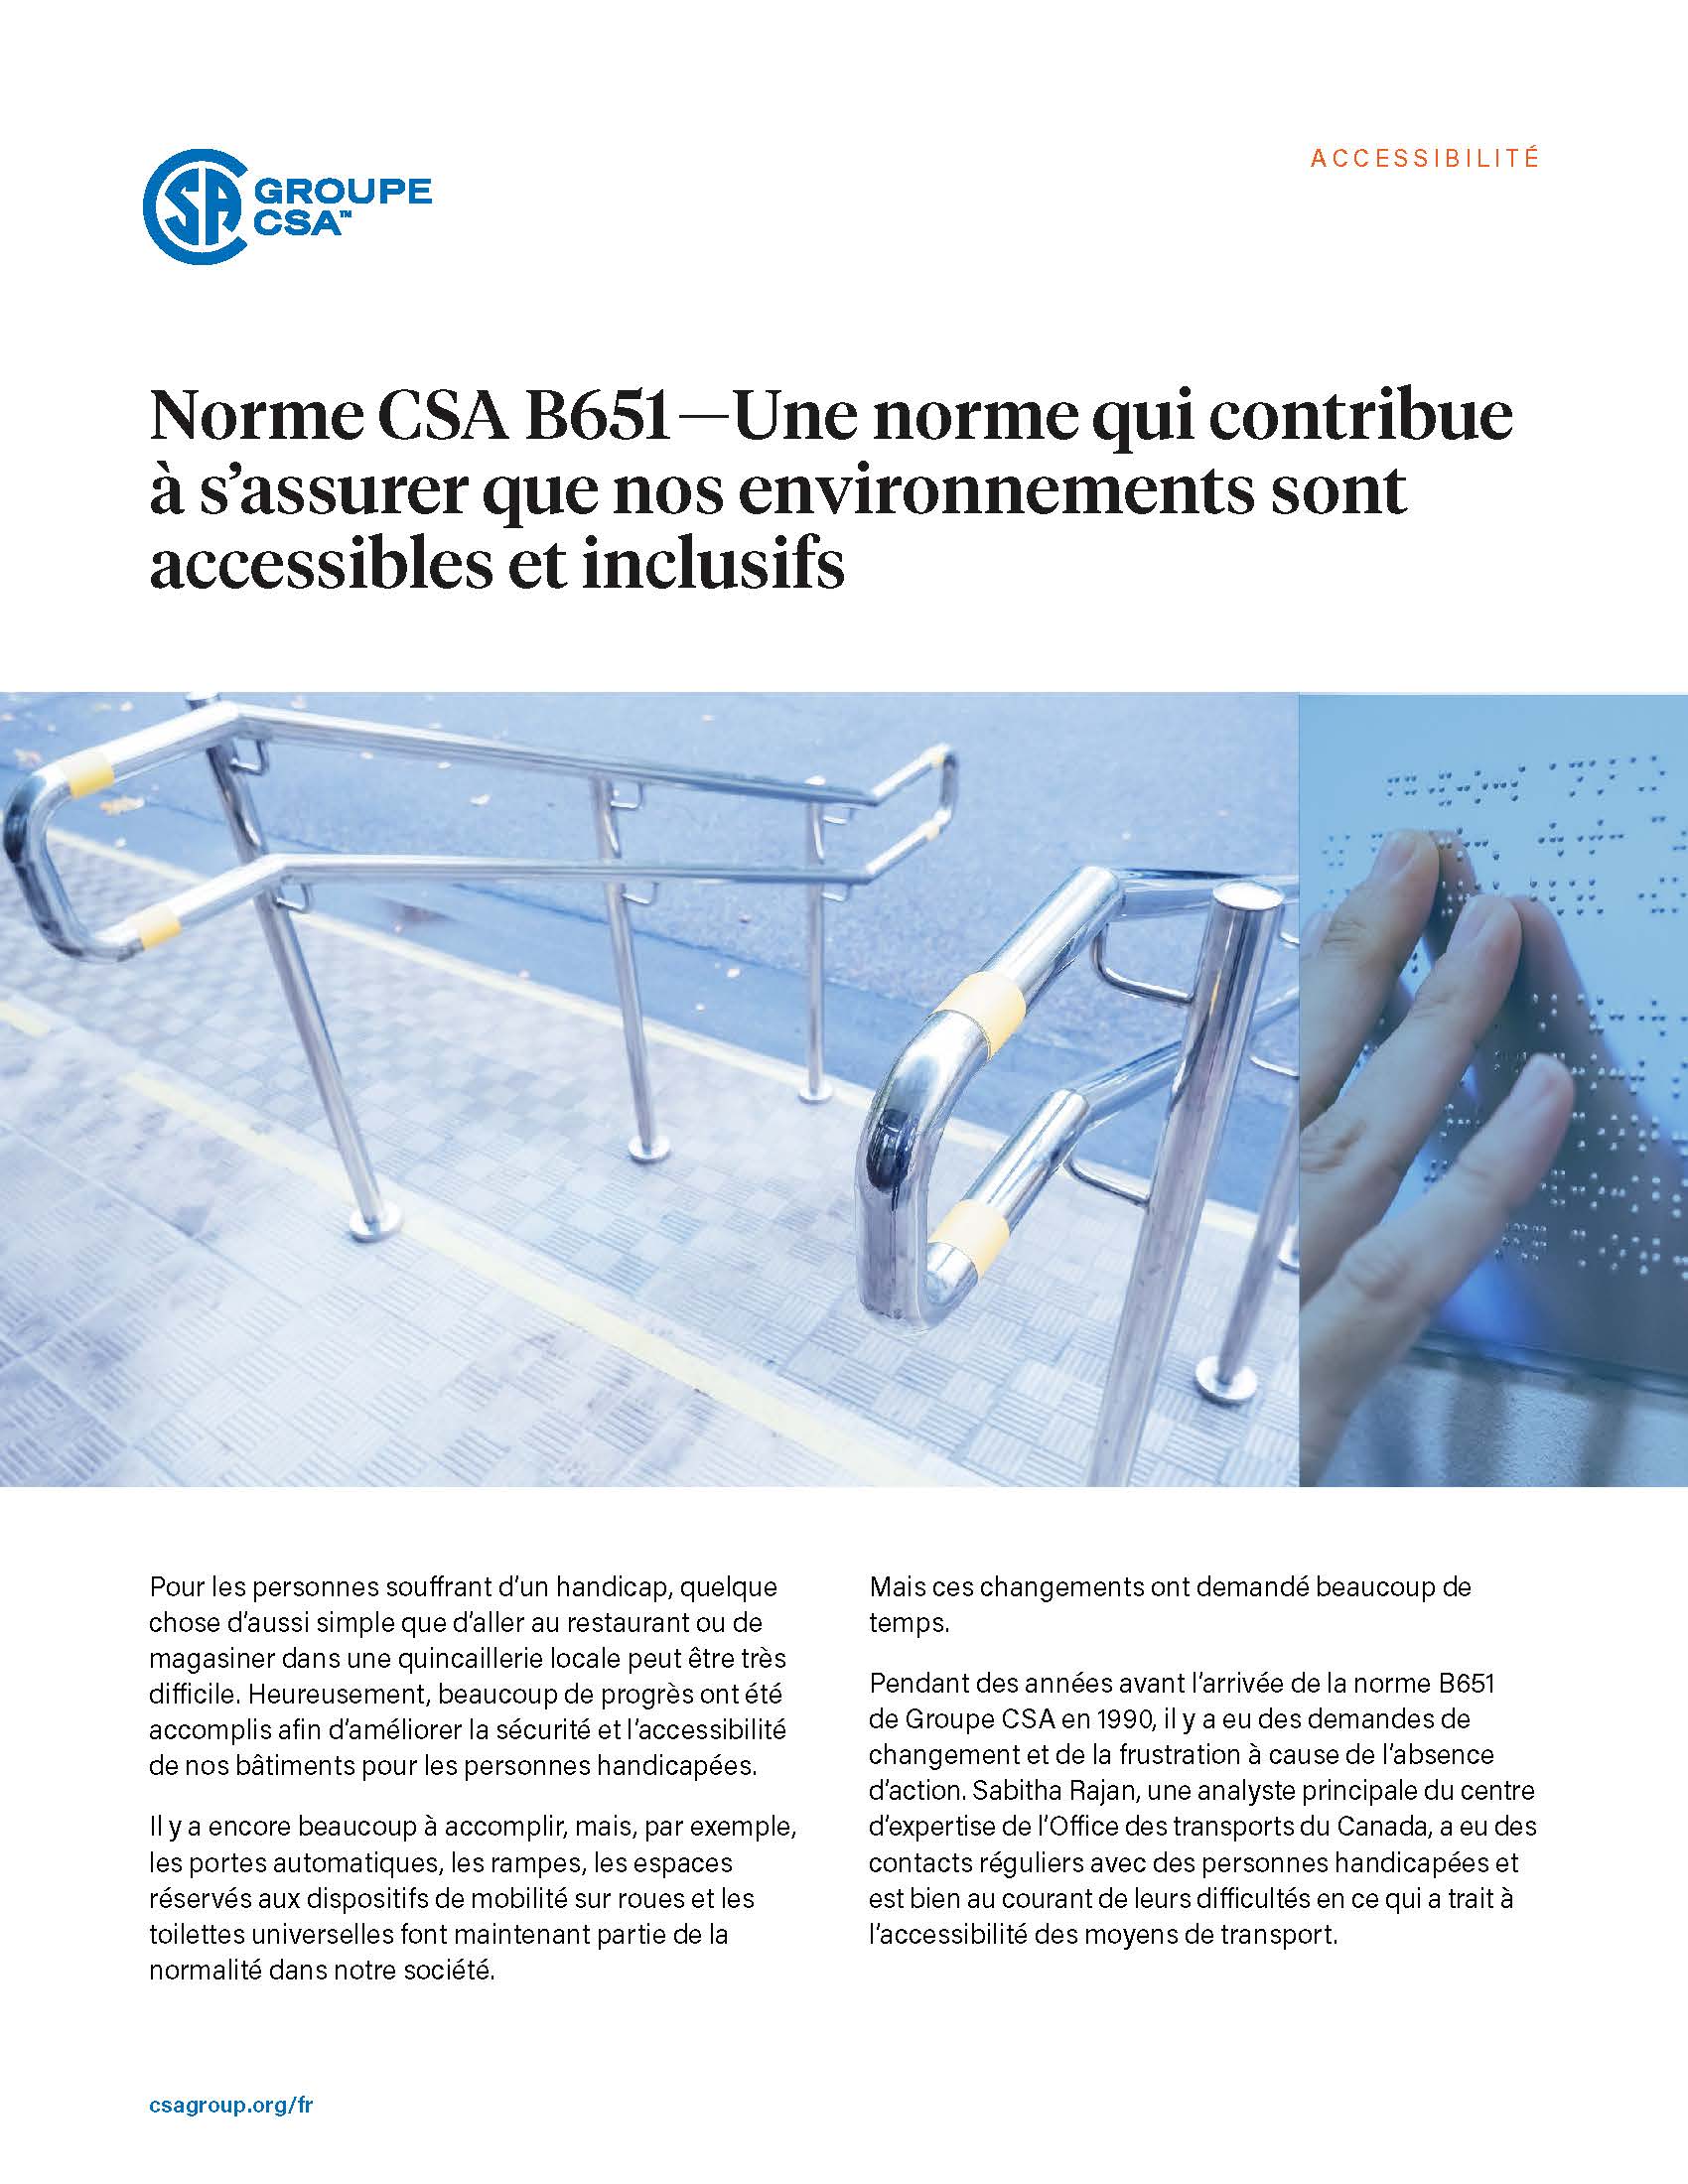 Norme CSA B651 — Une norme qui contribue à s’assurer que nos environnements sont accessibles et inclusifs.